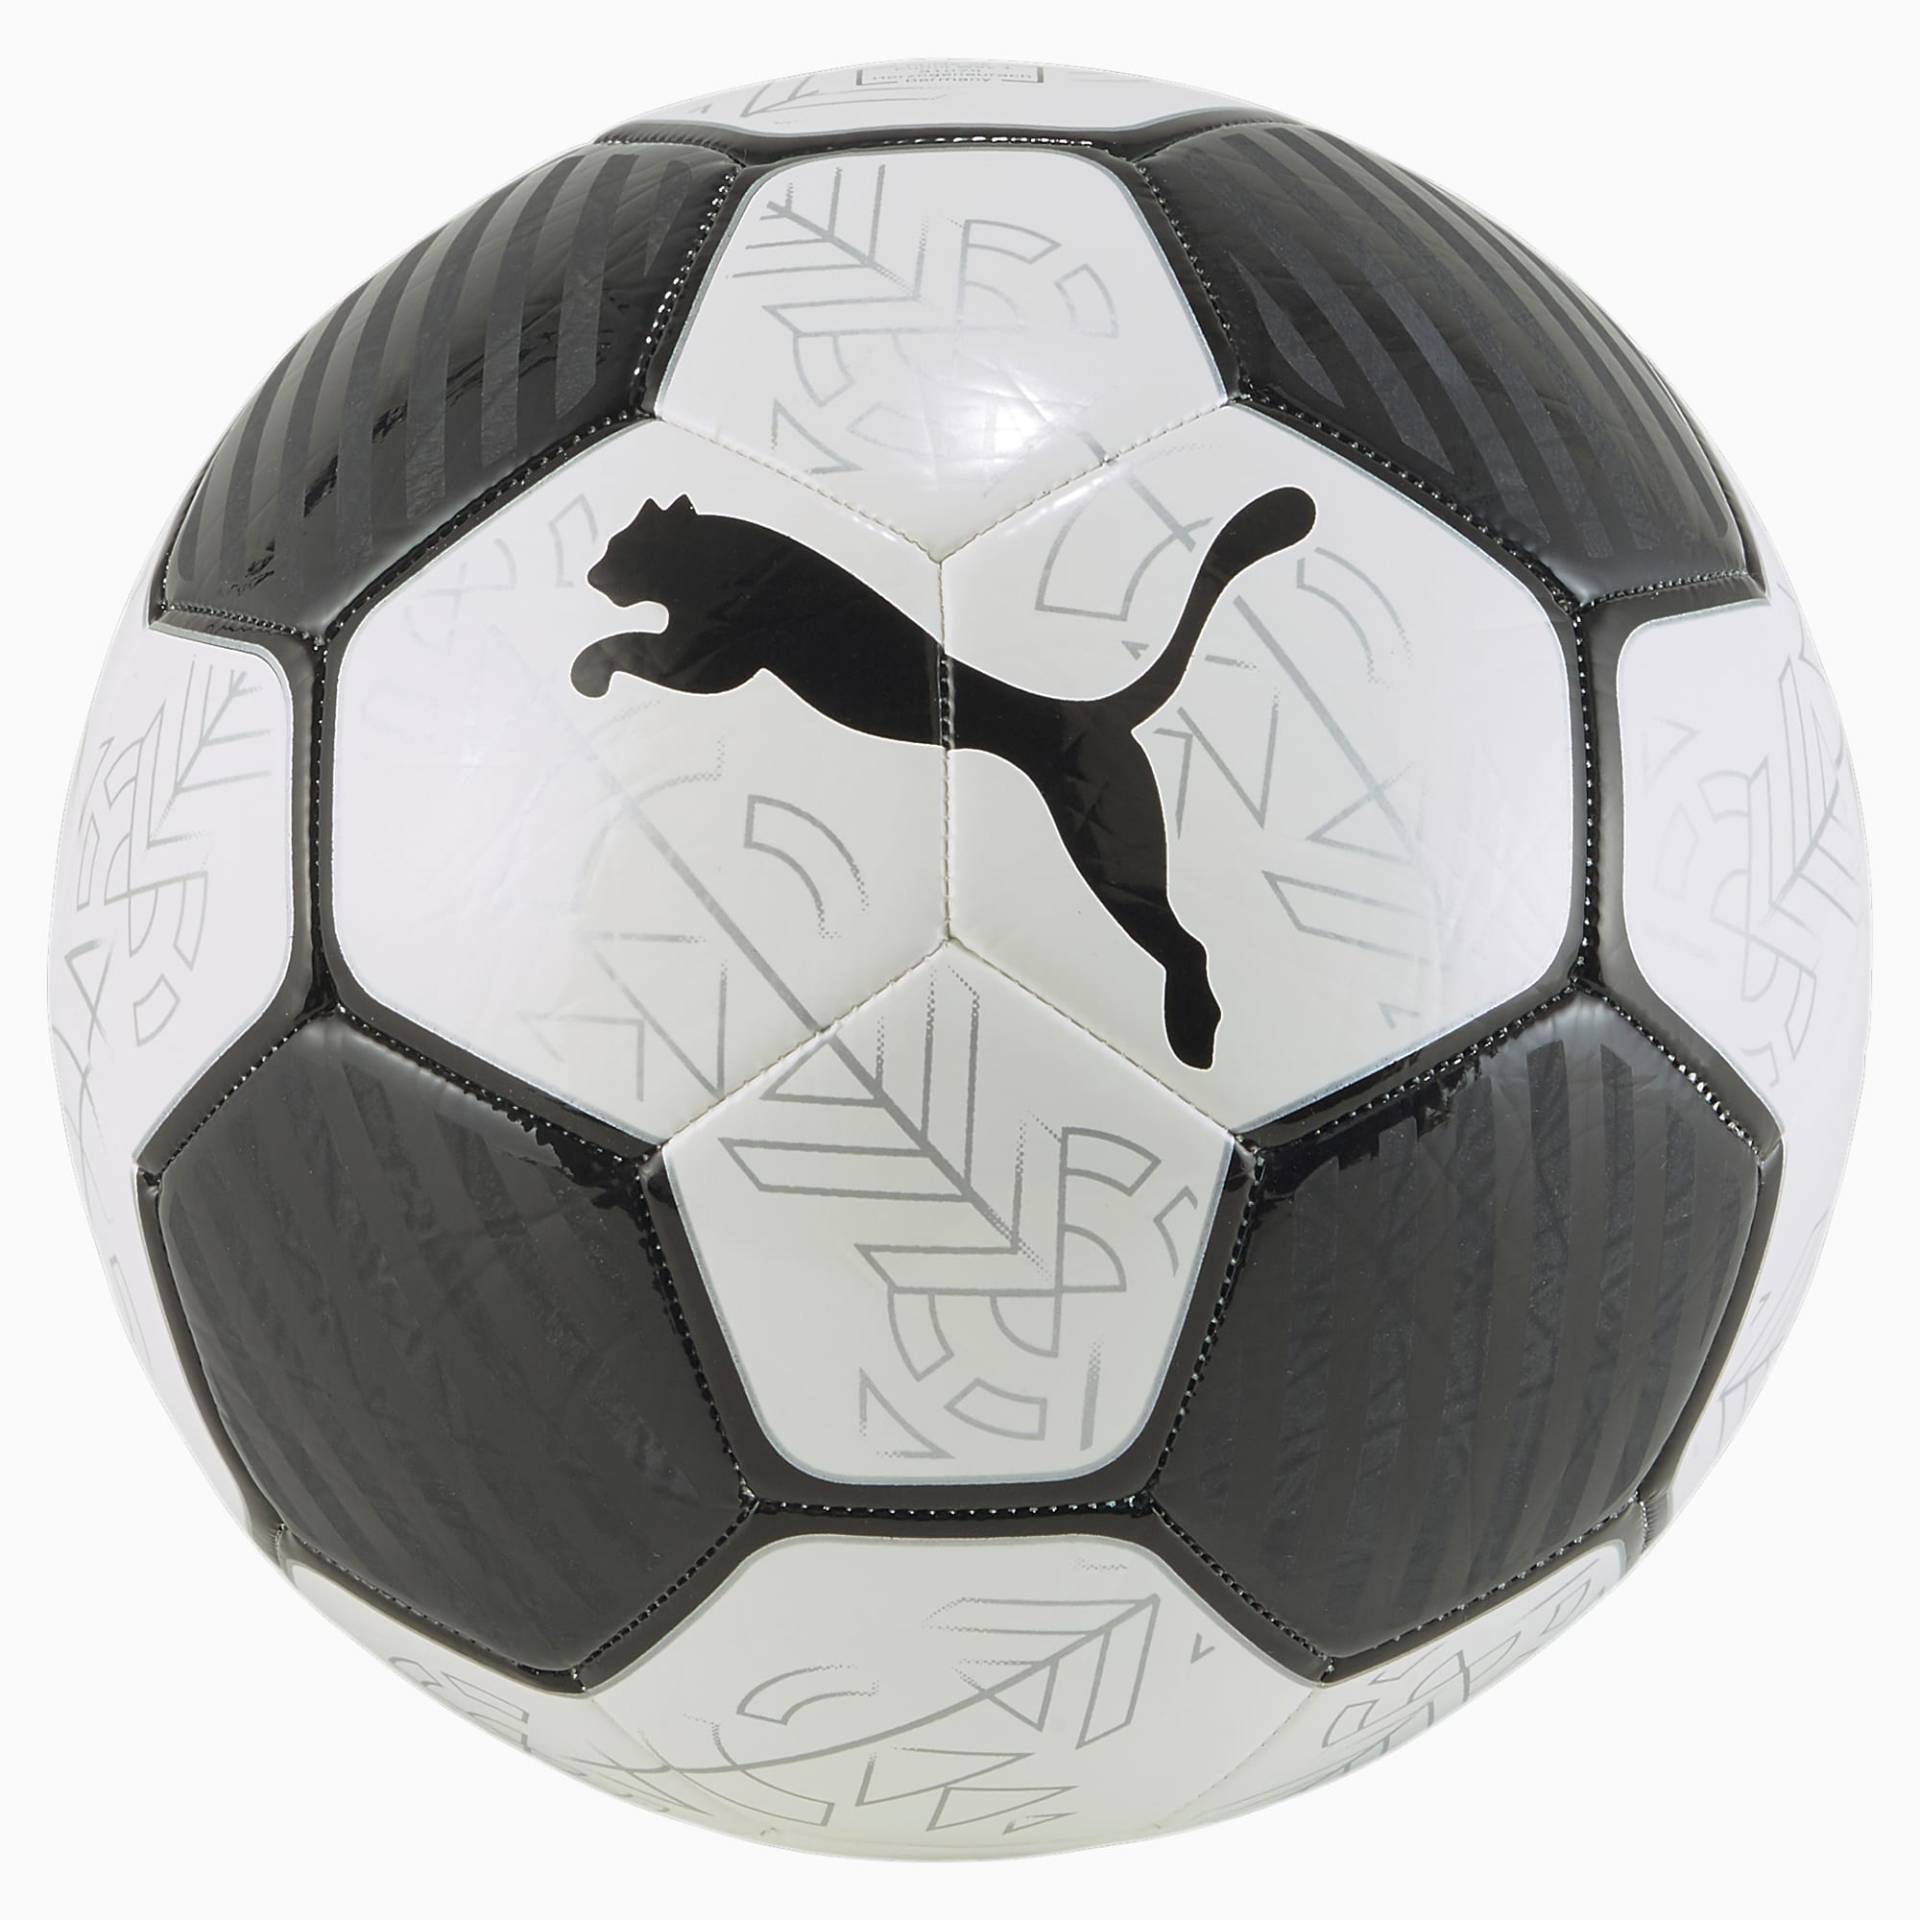 PUMA Prestige Fußball, Weiß/Schwarz, Größe: 4, Accessoires von PUMA